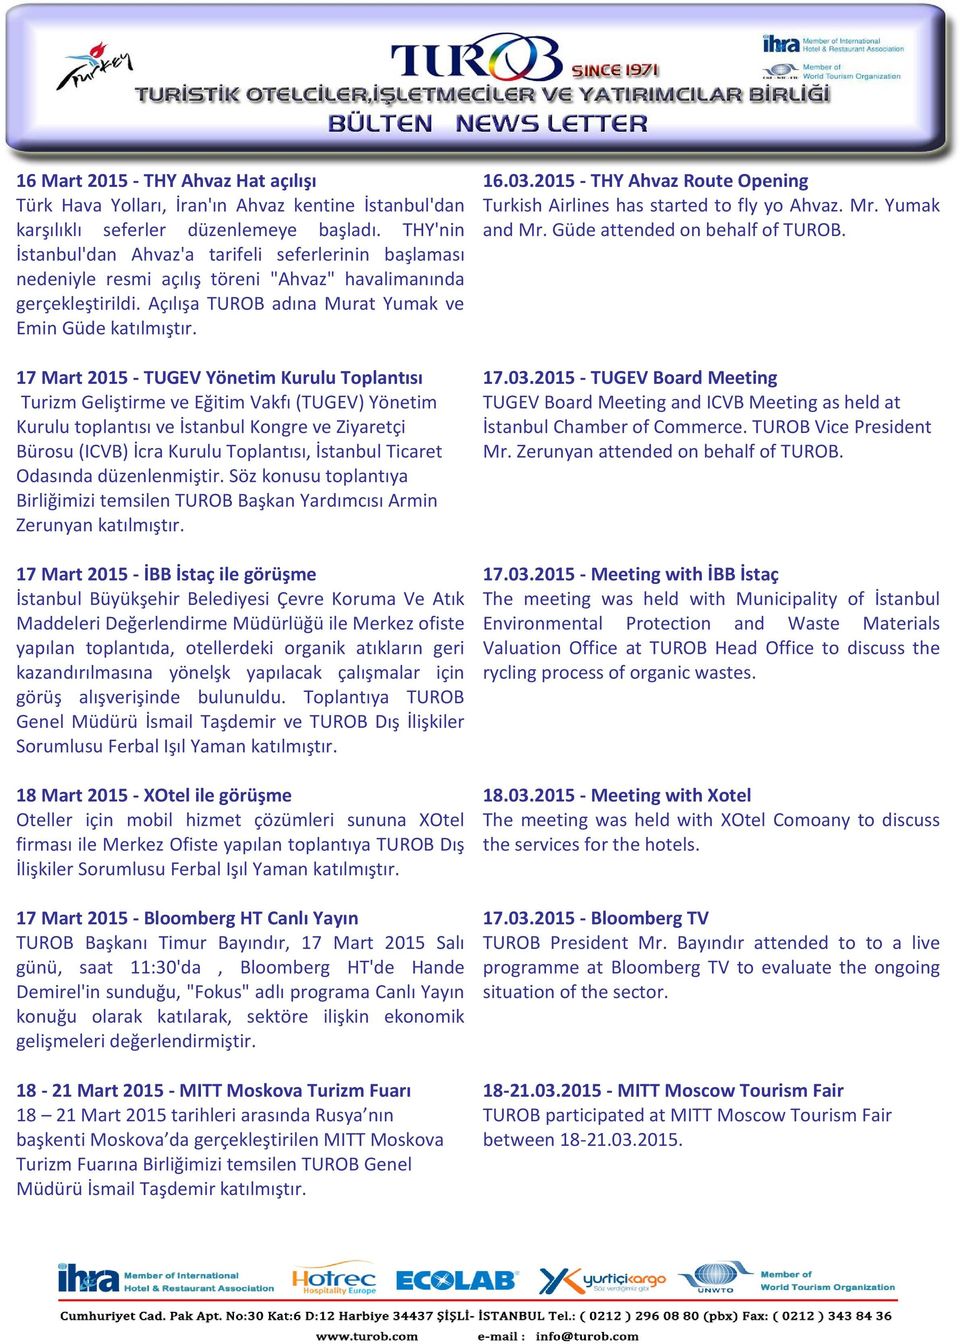 17 Mart 2015 - TUGEV Yönetim Kurulu Toplantısı Turizm Geliştirme ve Eğitim Vakfı (TUGEV) Yönetim Kurulu toplantısı ve İstanbul Kongre ve Ziyaretçi Bürosu (ICVB) İcra Kurulu Toplantısı, İstanbul